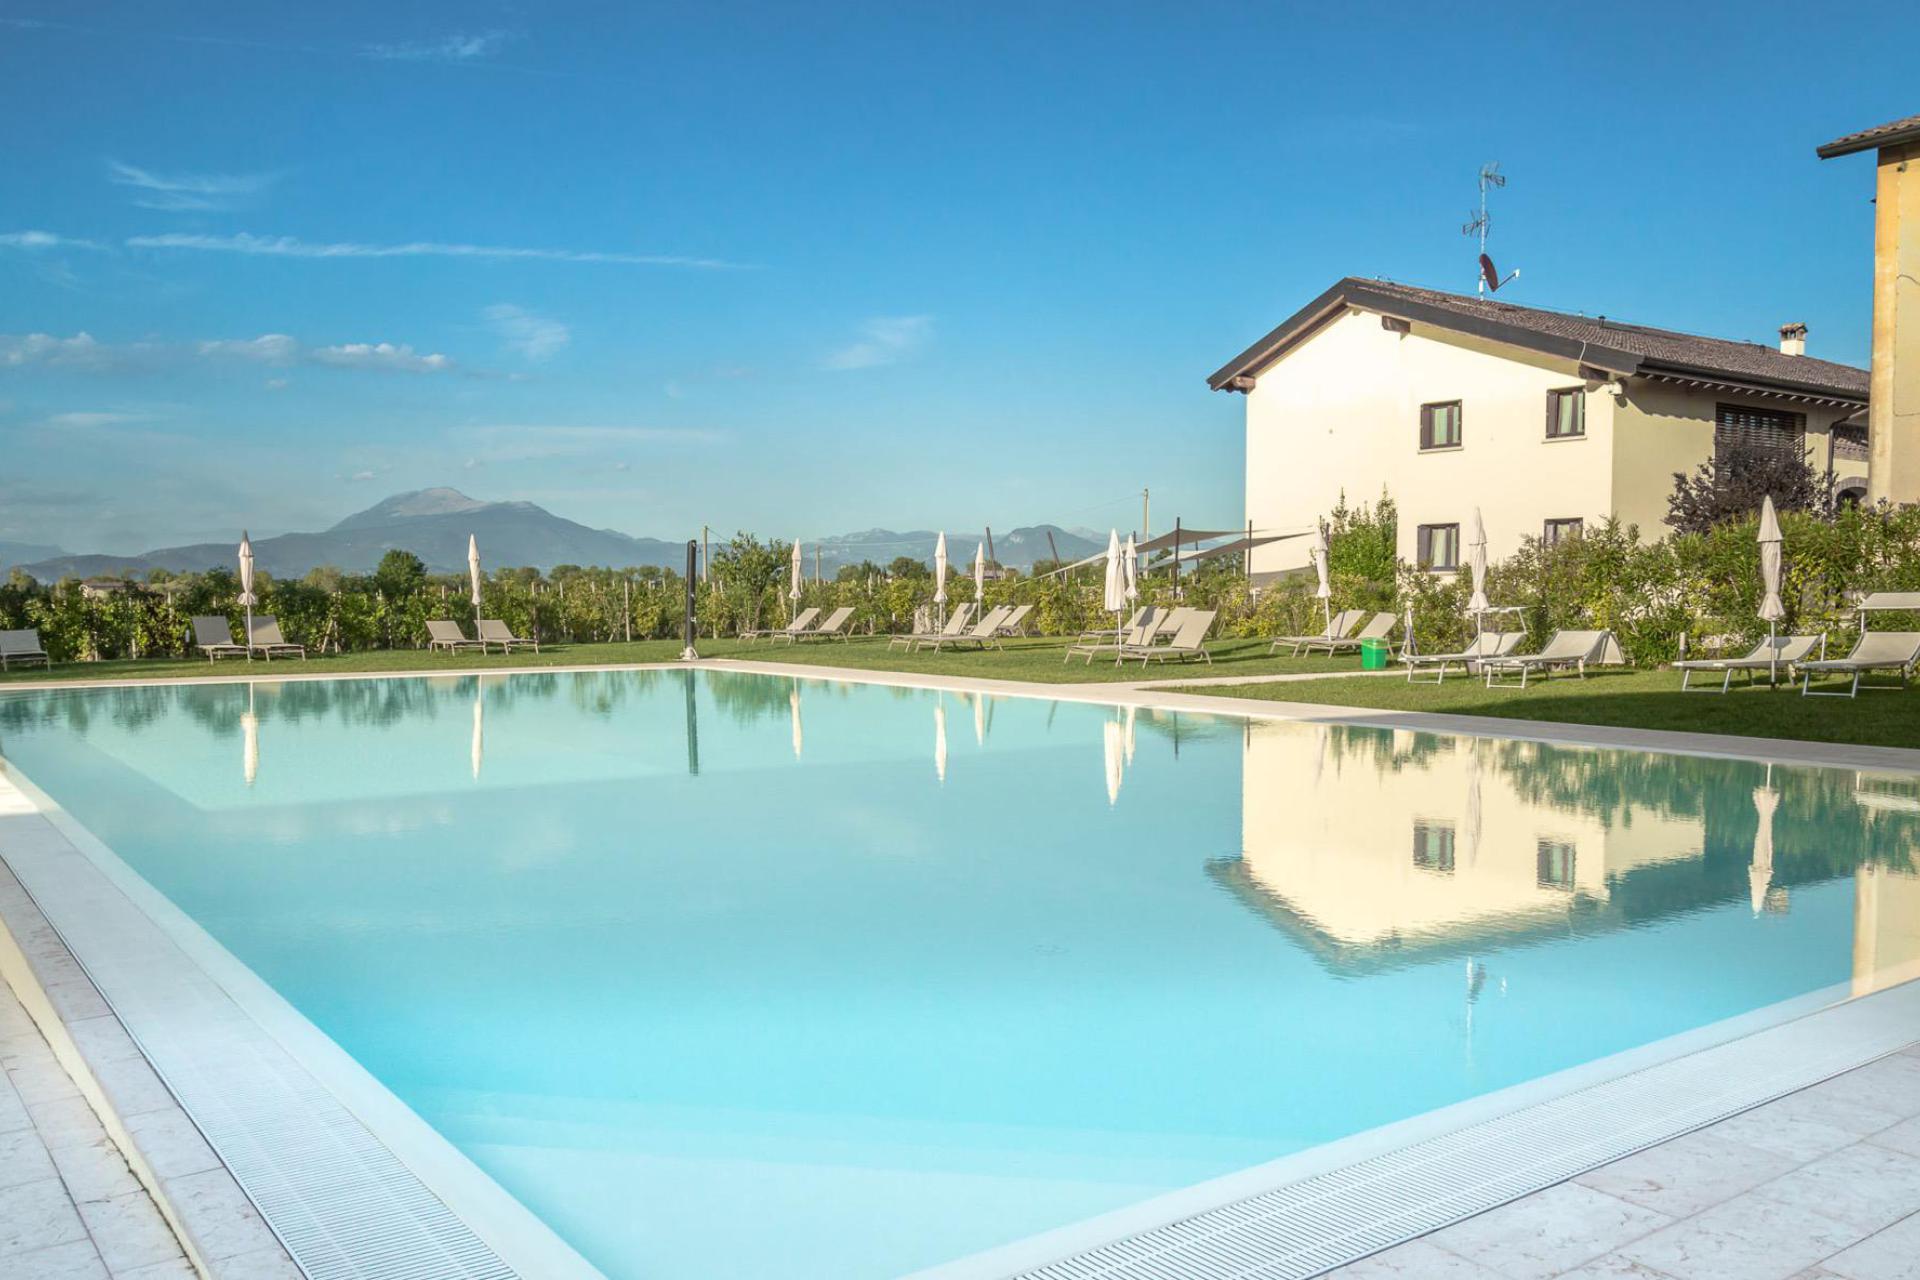 Family agriturismo Lake Garda with large pool